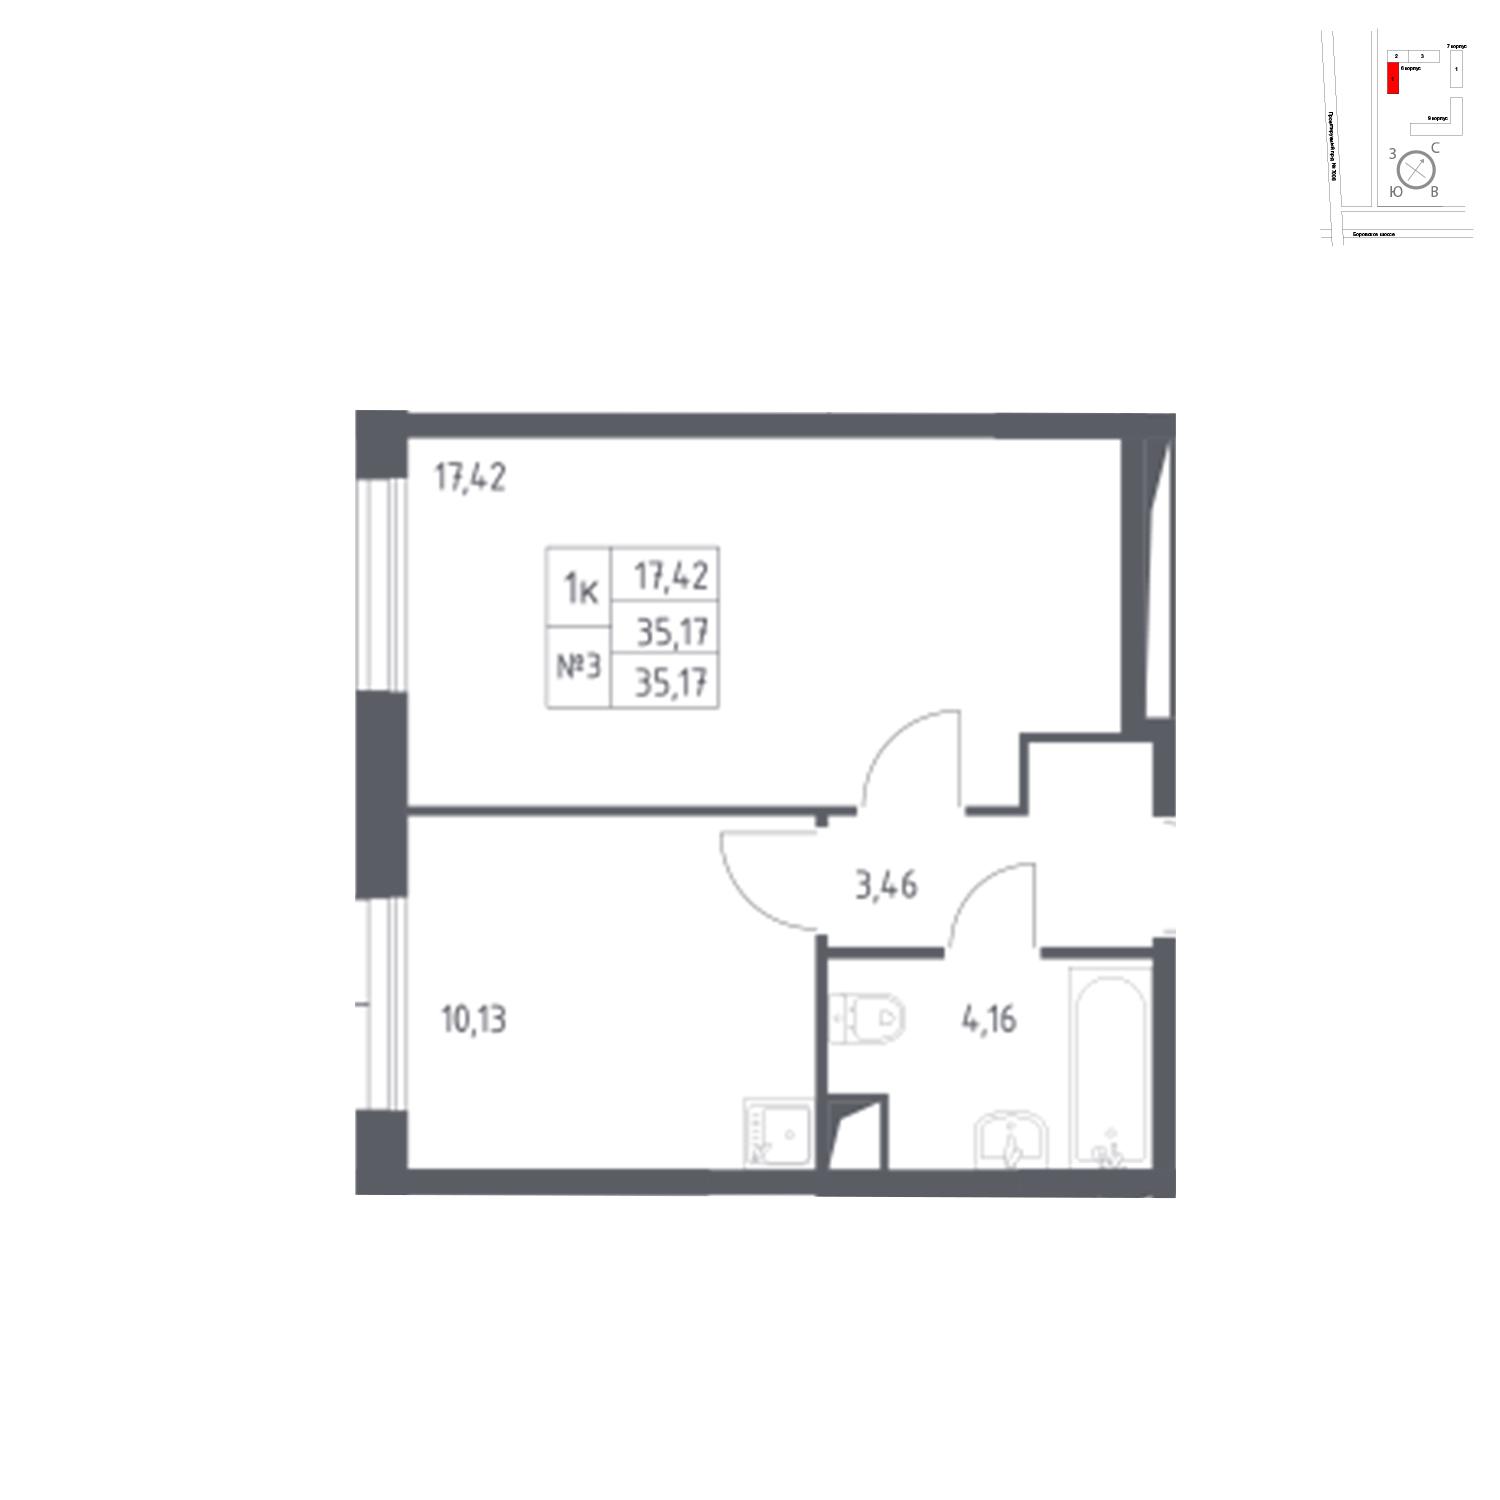 Продаётся 1-комнатная квартира в новостройке 35.2 кв.м. этаж 2/14 за 8 460 927 руб 